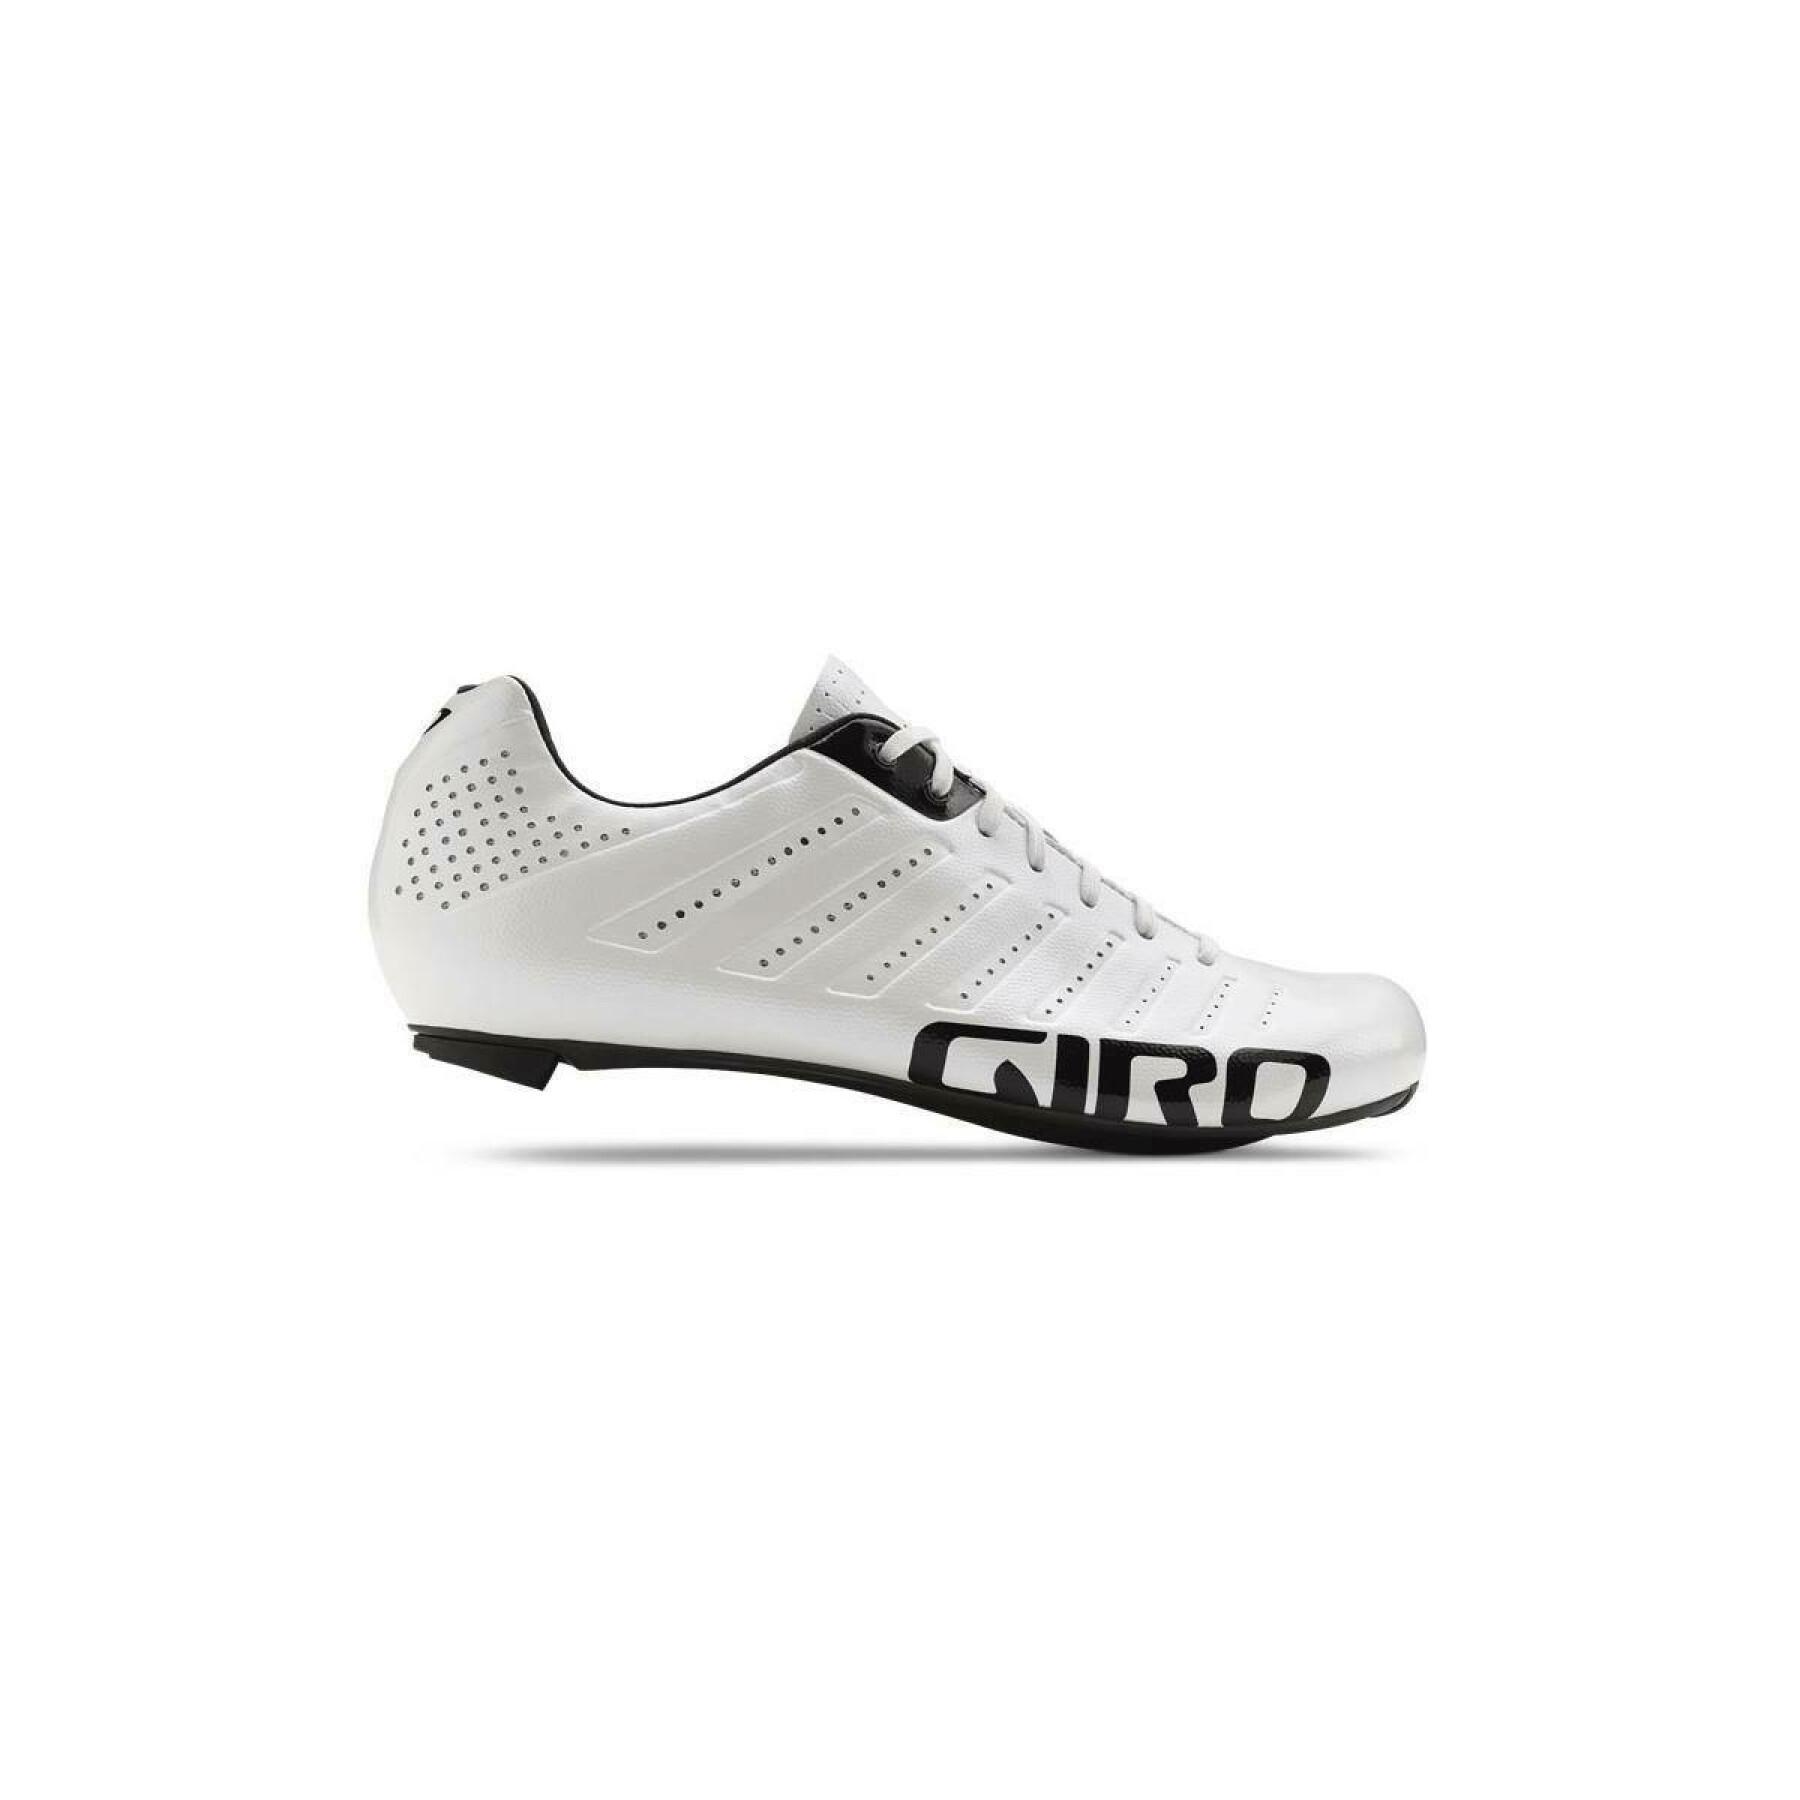 Zapatos Giro Empire Slx